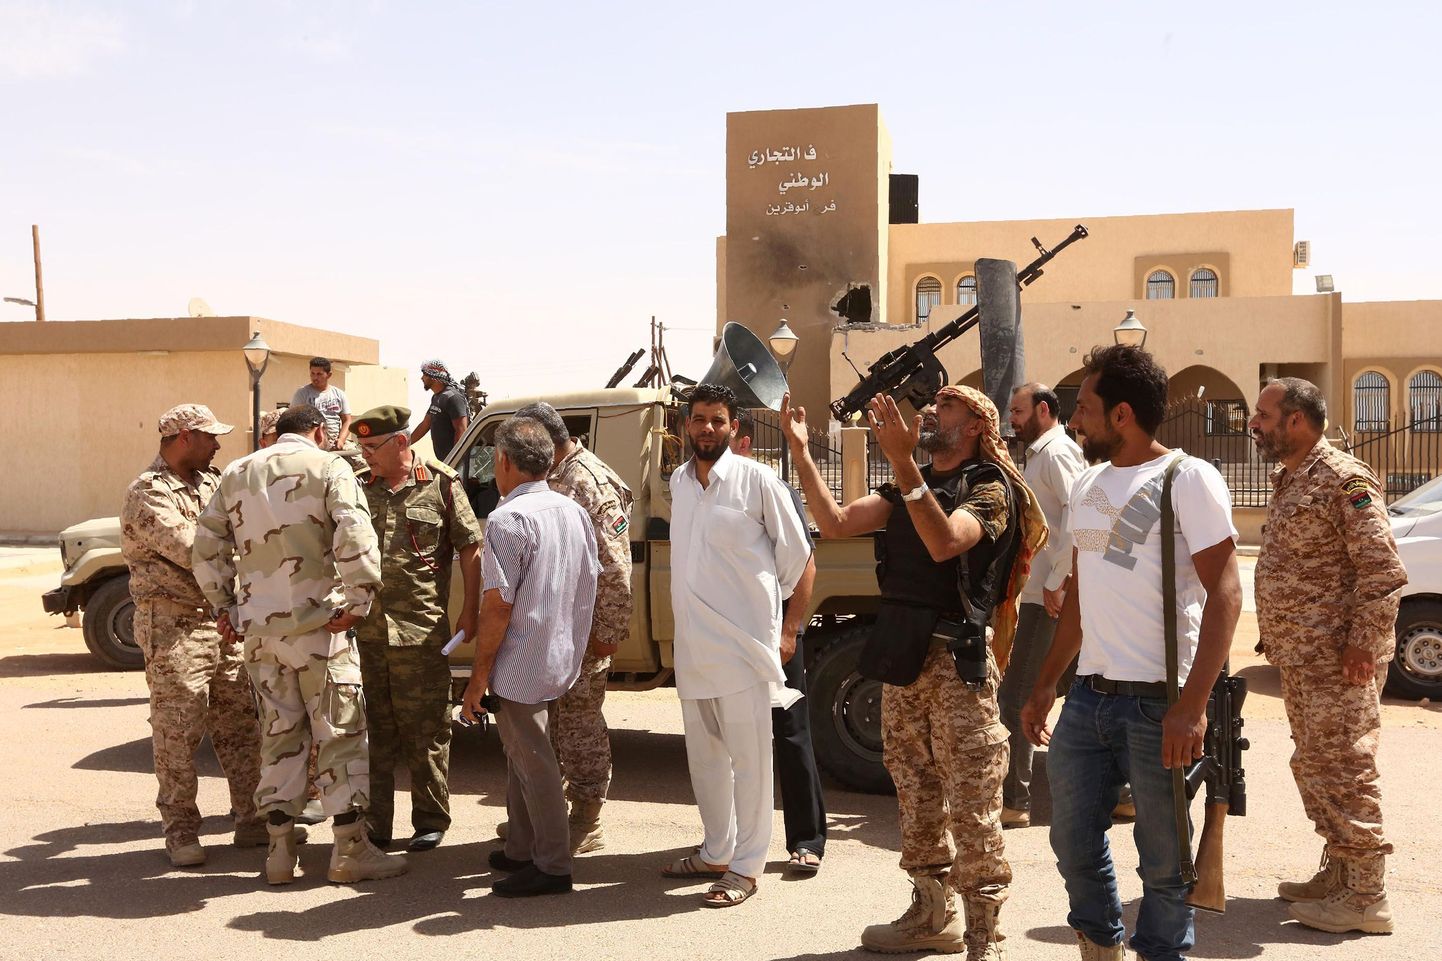 Praegu Liibüa ametlikuks keskvalitsuseks peetava jõu meelsed üksused tähistasid üleeile Misrata linna ISISe terroristide käest võtmist.